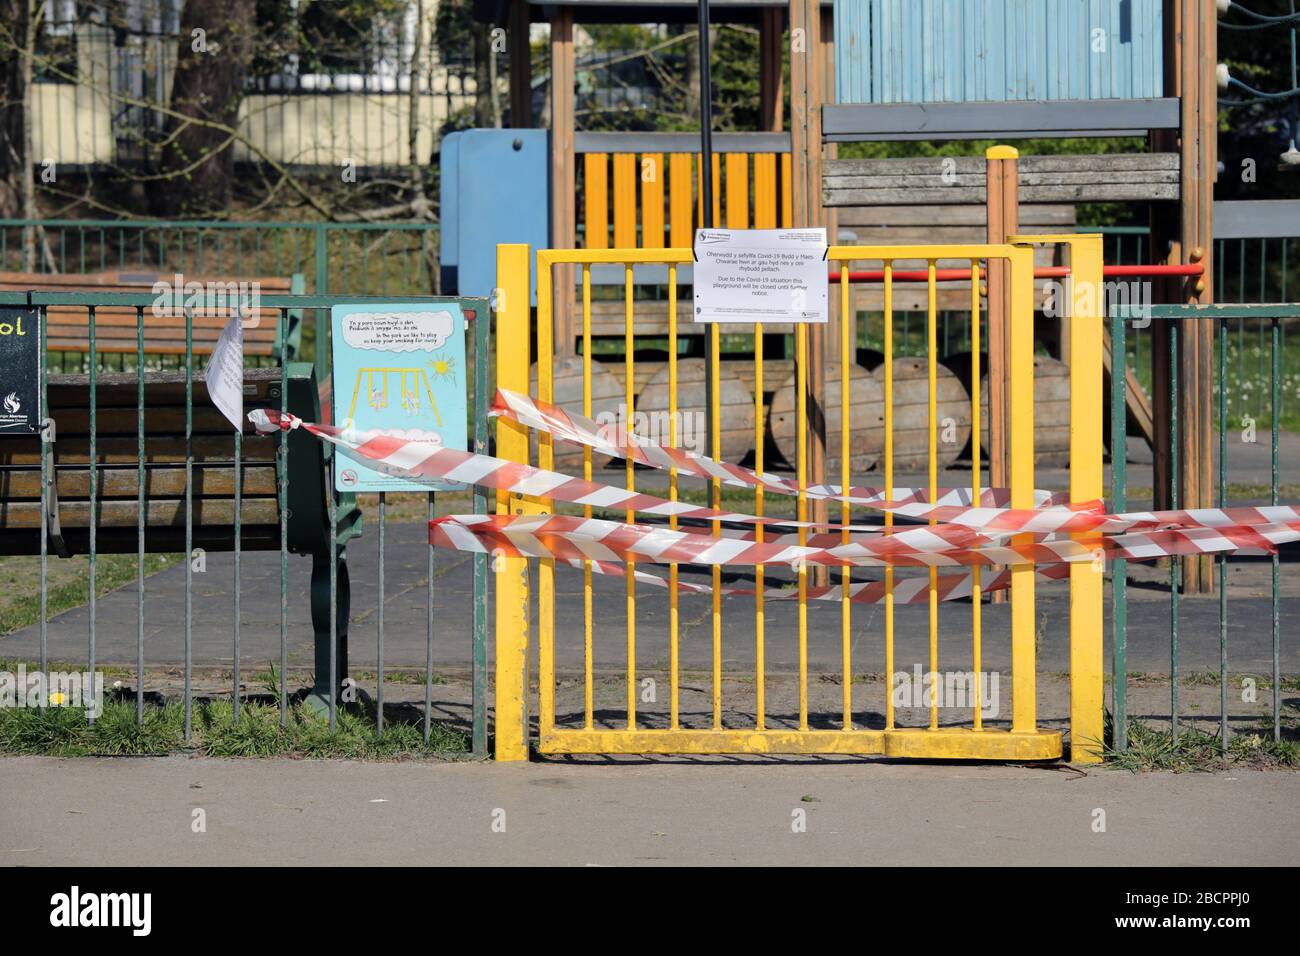 Swansea, Wales, Großbritannien - 5. April 2020: Geschlossener Spielbereich im Freien. Der Spielbereich für Kinder hat ein Tor mit rotem und weißem Band verschlossen, um das Sammeln von Menschen zu verhindern. Coron Stockfoto